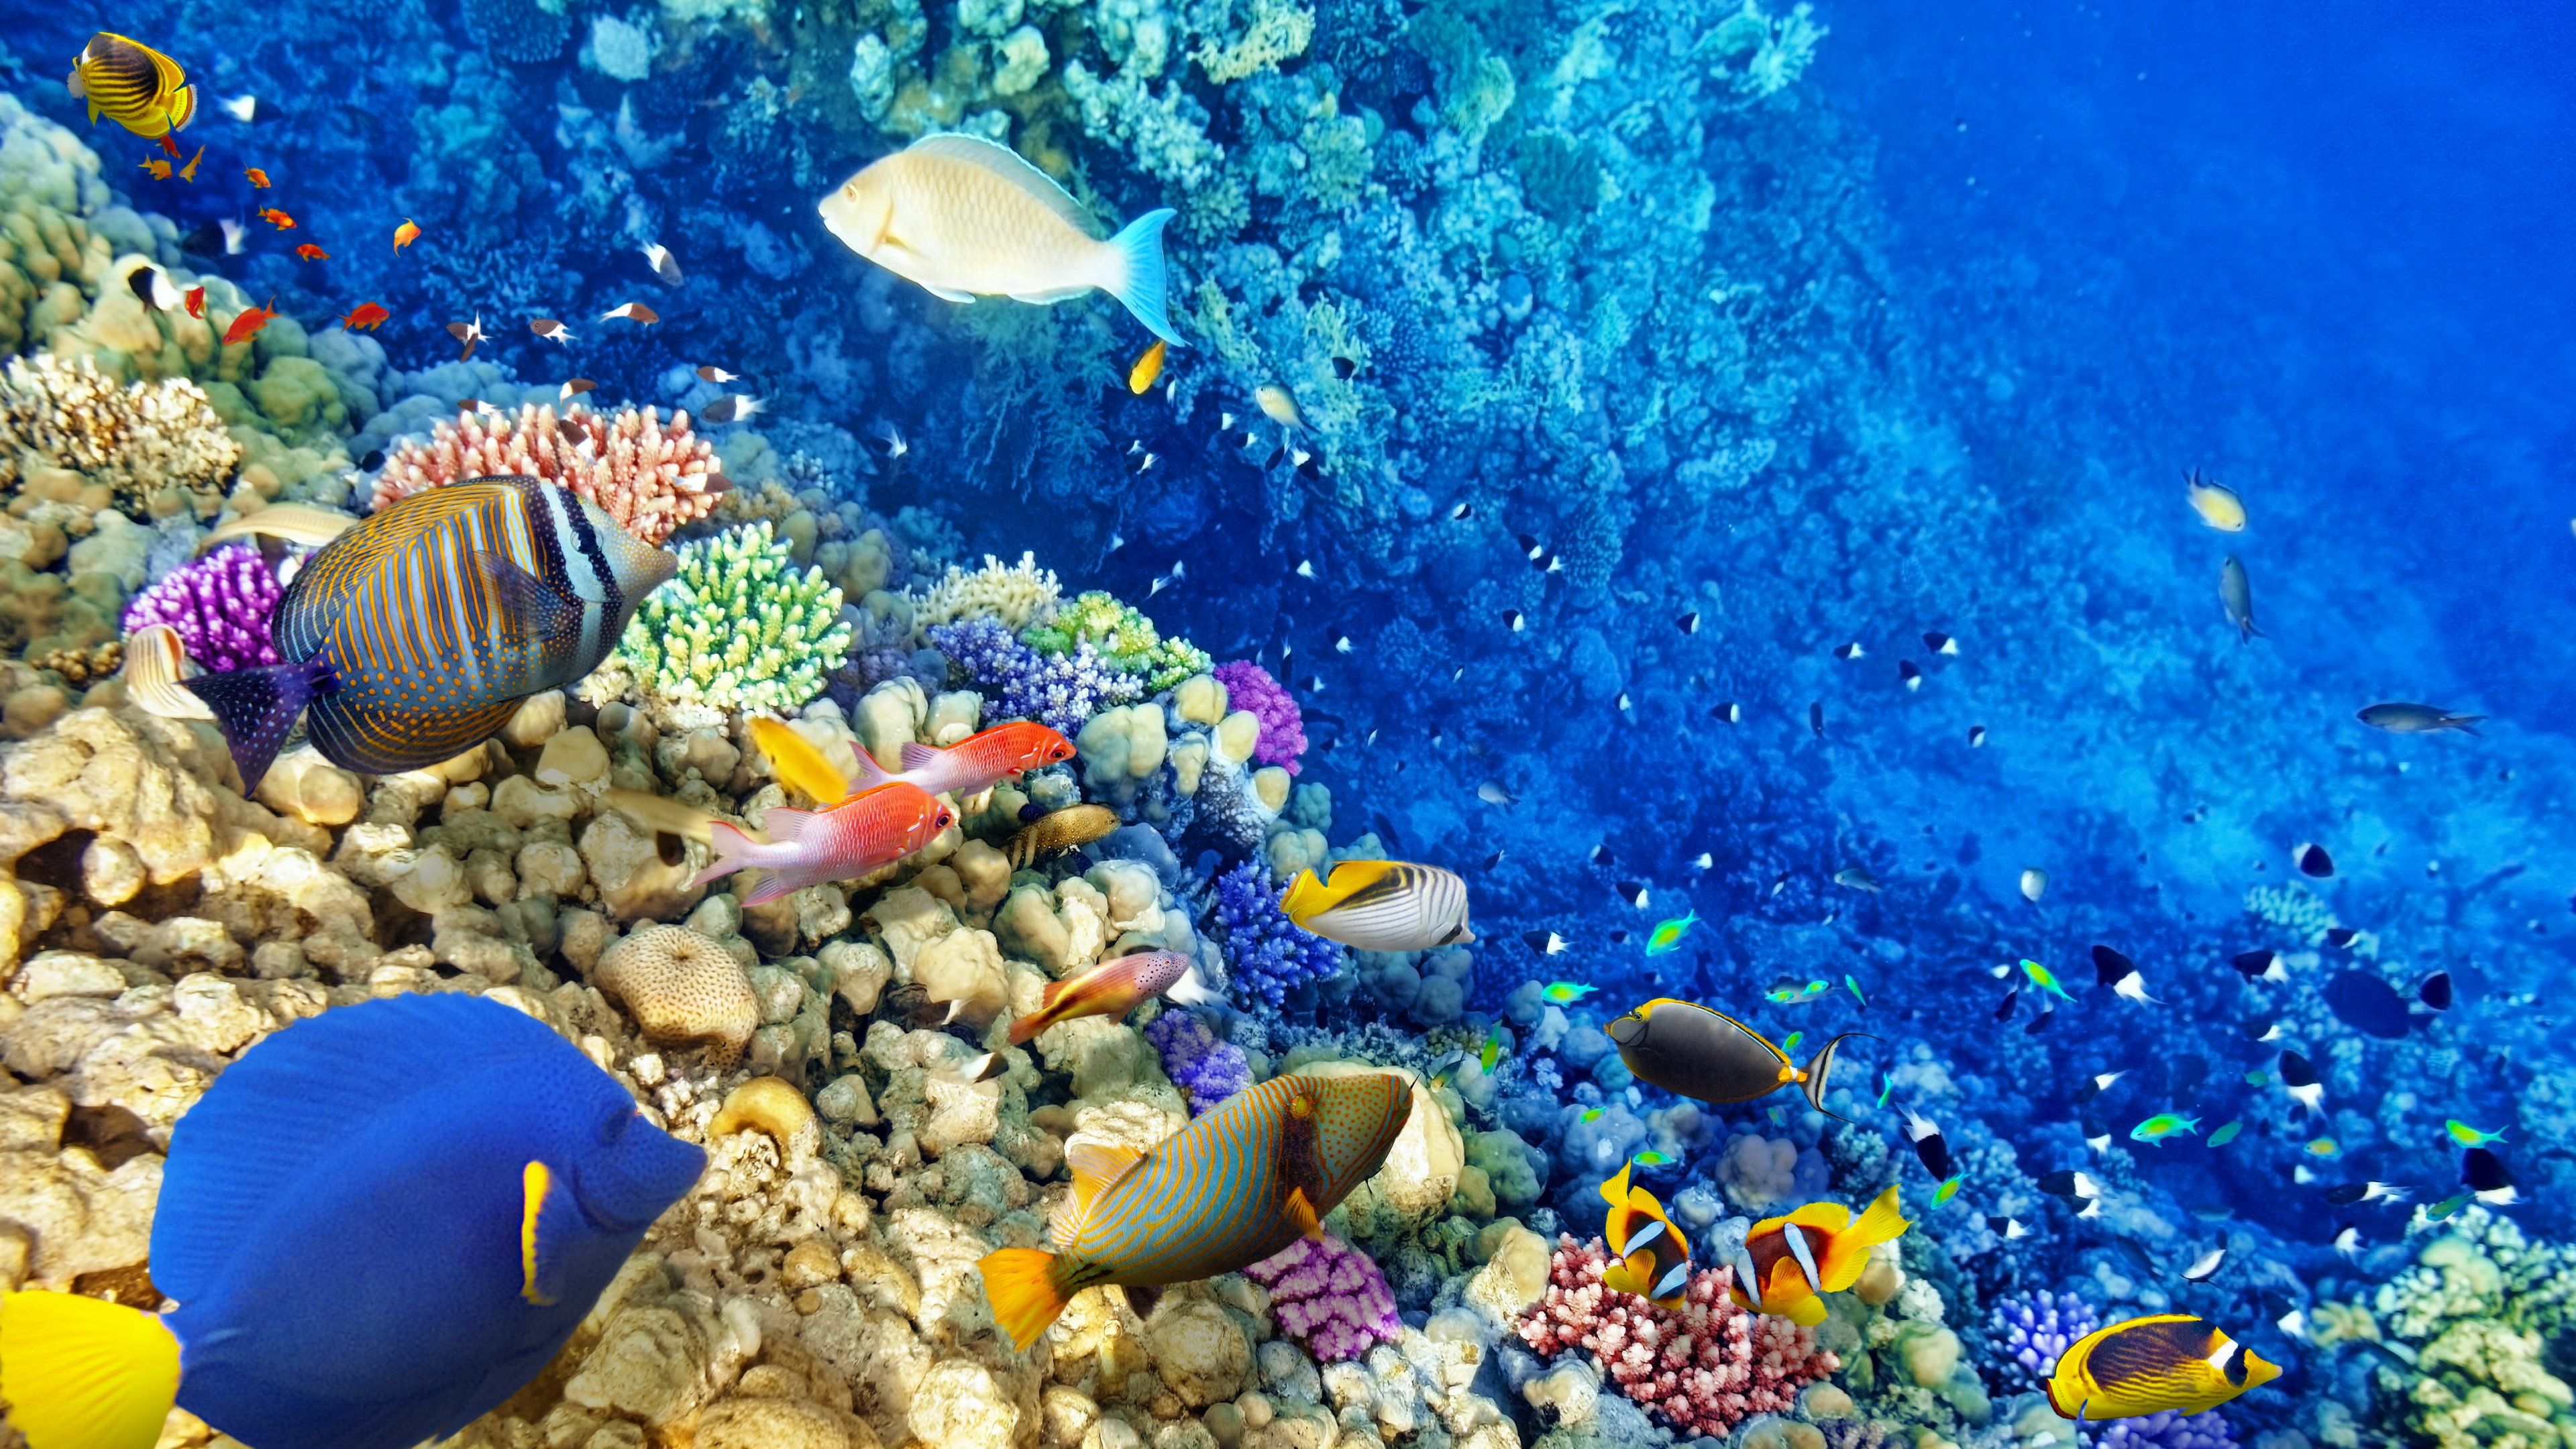 Download desktop wallpaper Underwater World Coral Reef 3840x2160